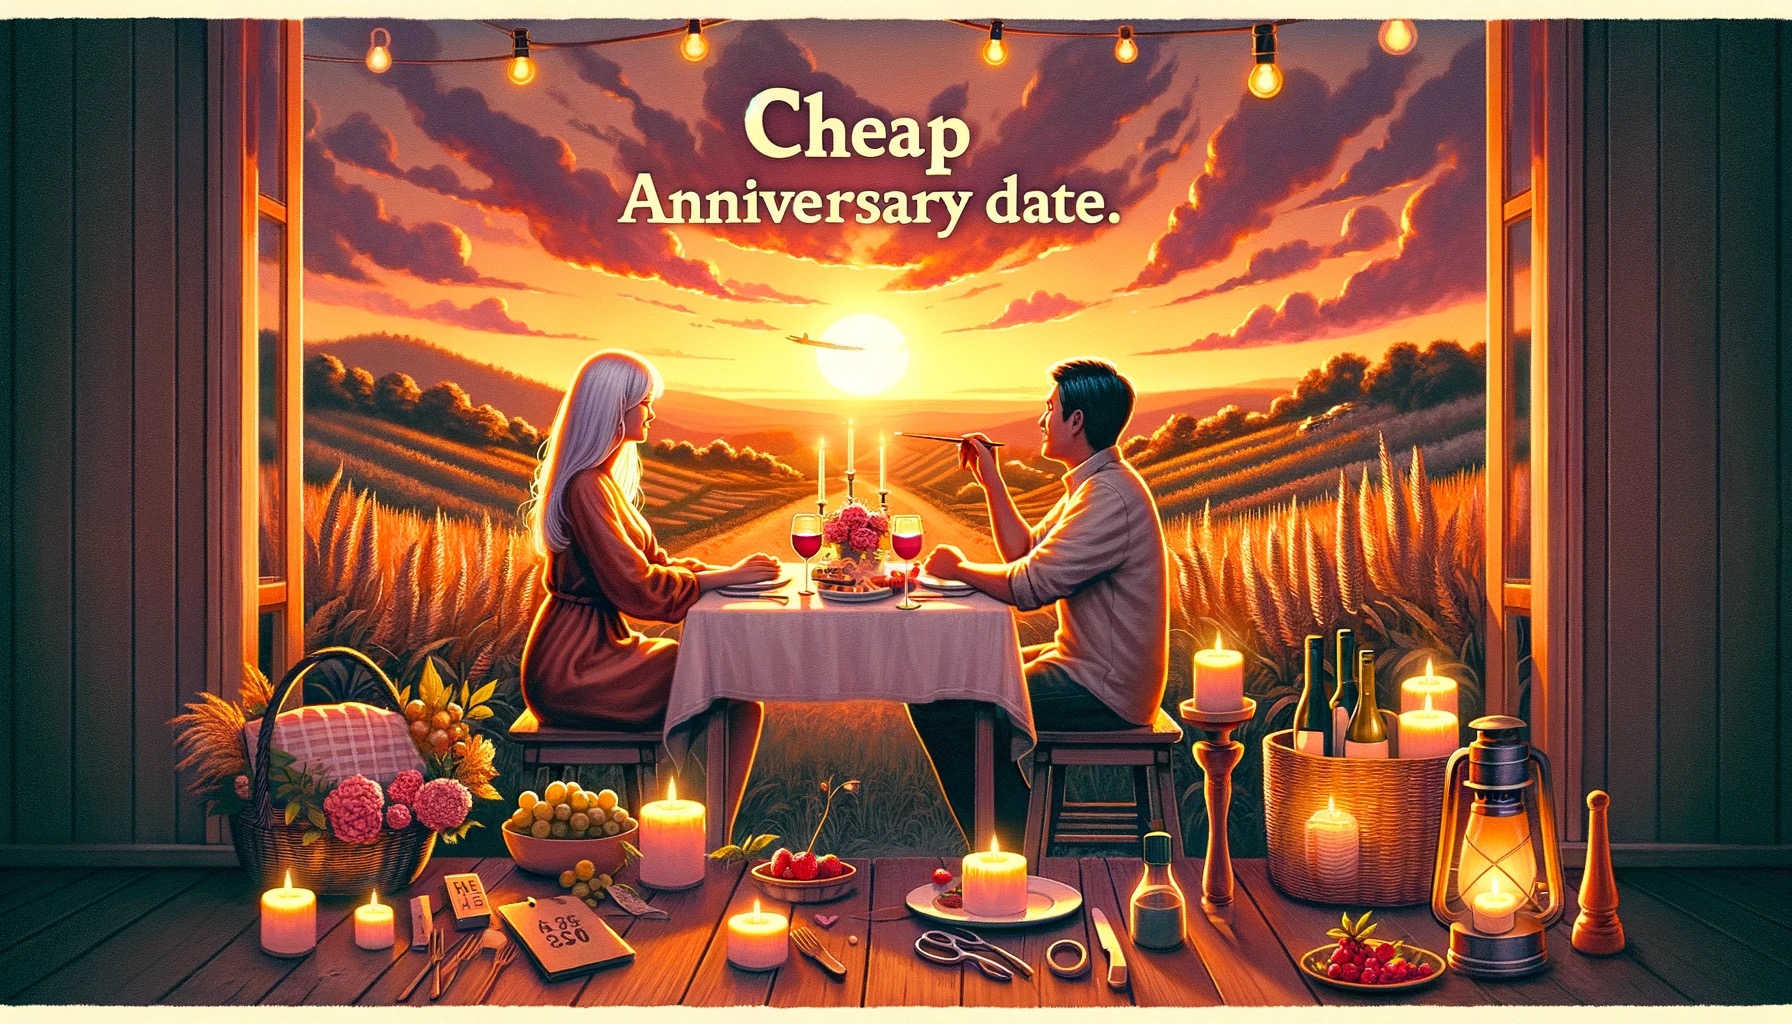 cheap anniversary date ideas